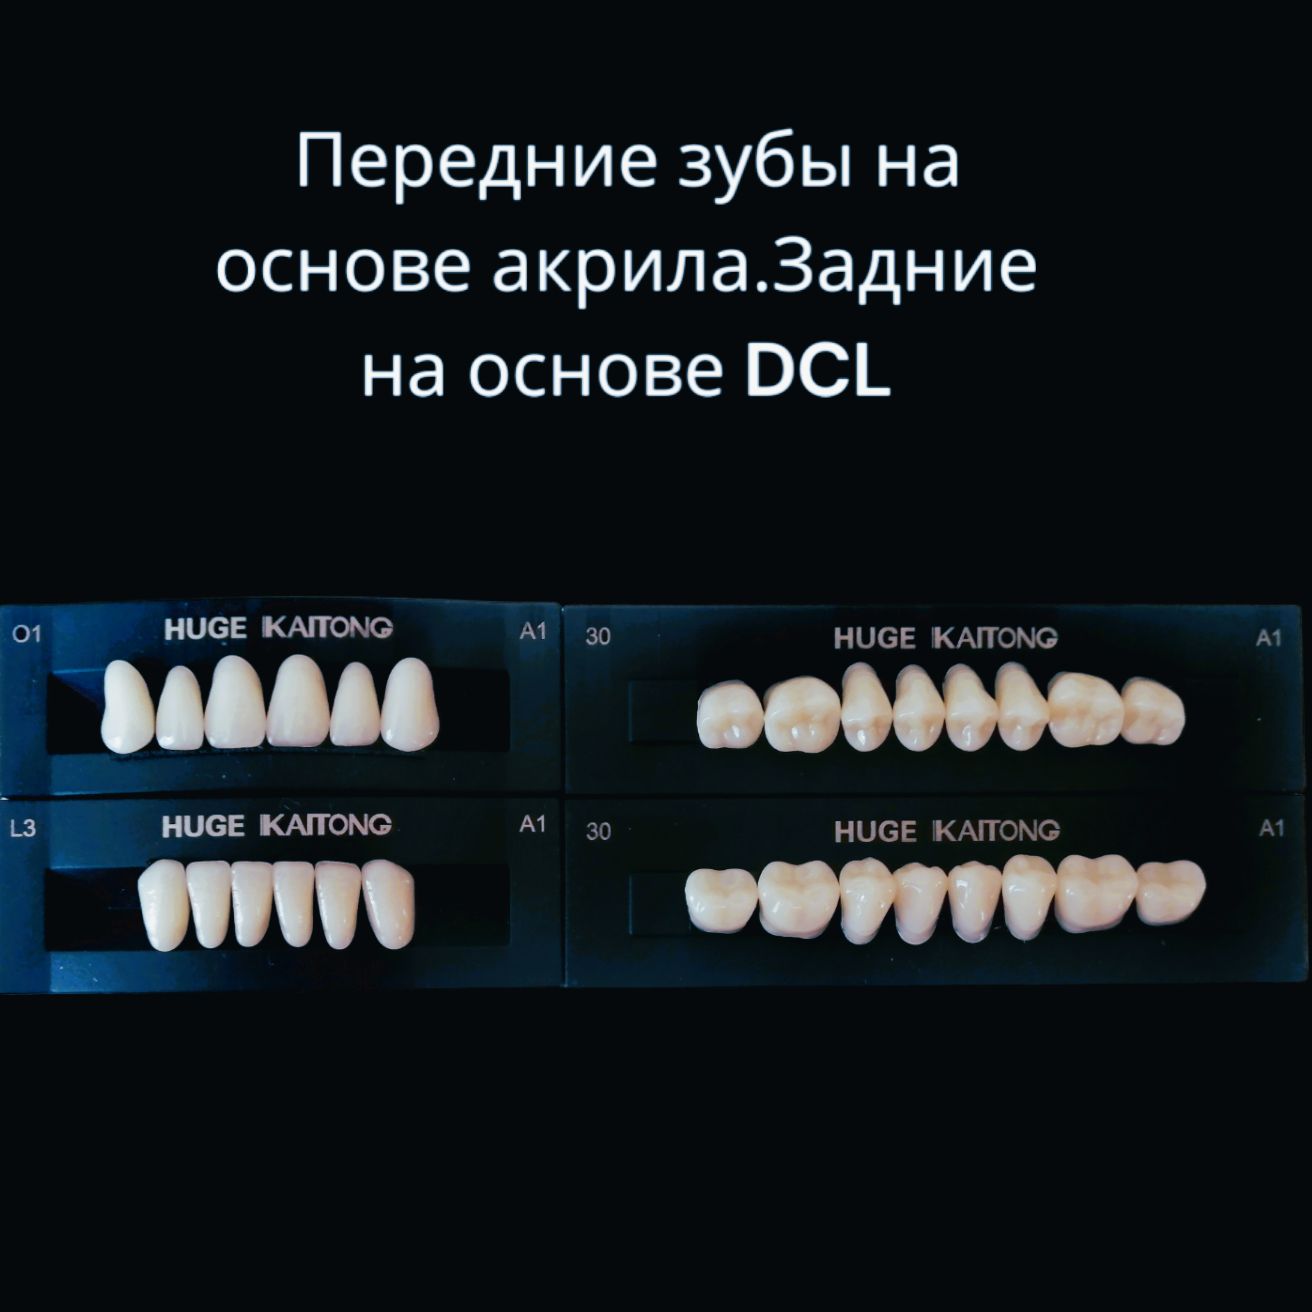 Зубыакриловые2-хслойныеА1О1Kaitong(1гарнитур,28зубов)HUGEDENTAL